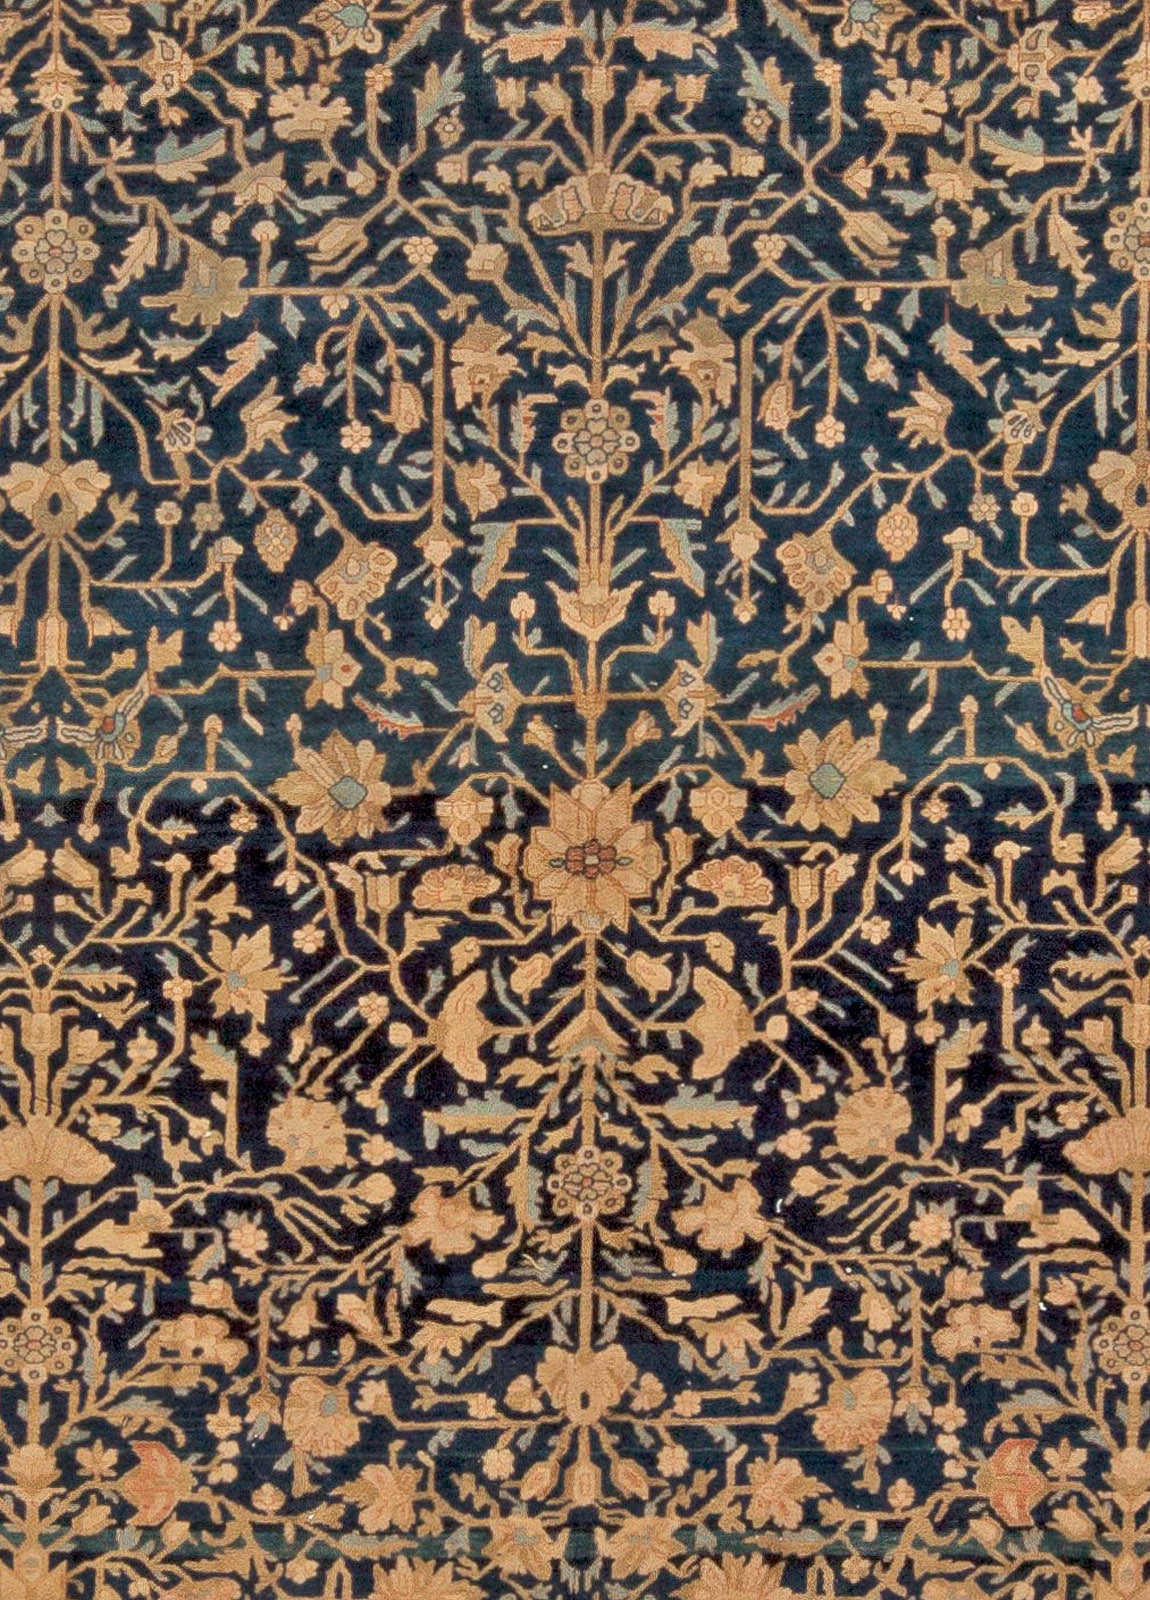 Vintage Persian Kashan Botanic Navy Brown Handmade Wool Rug by Doris Leslie Blau
Size: 11'5